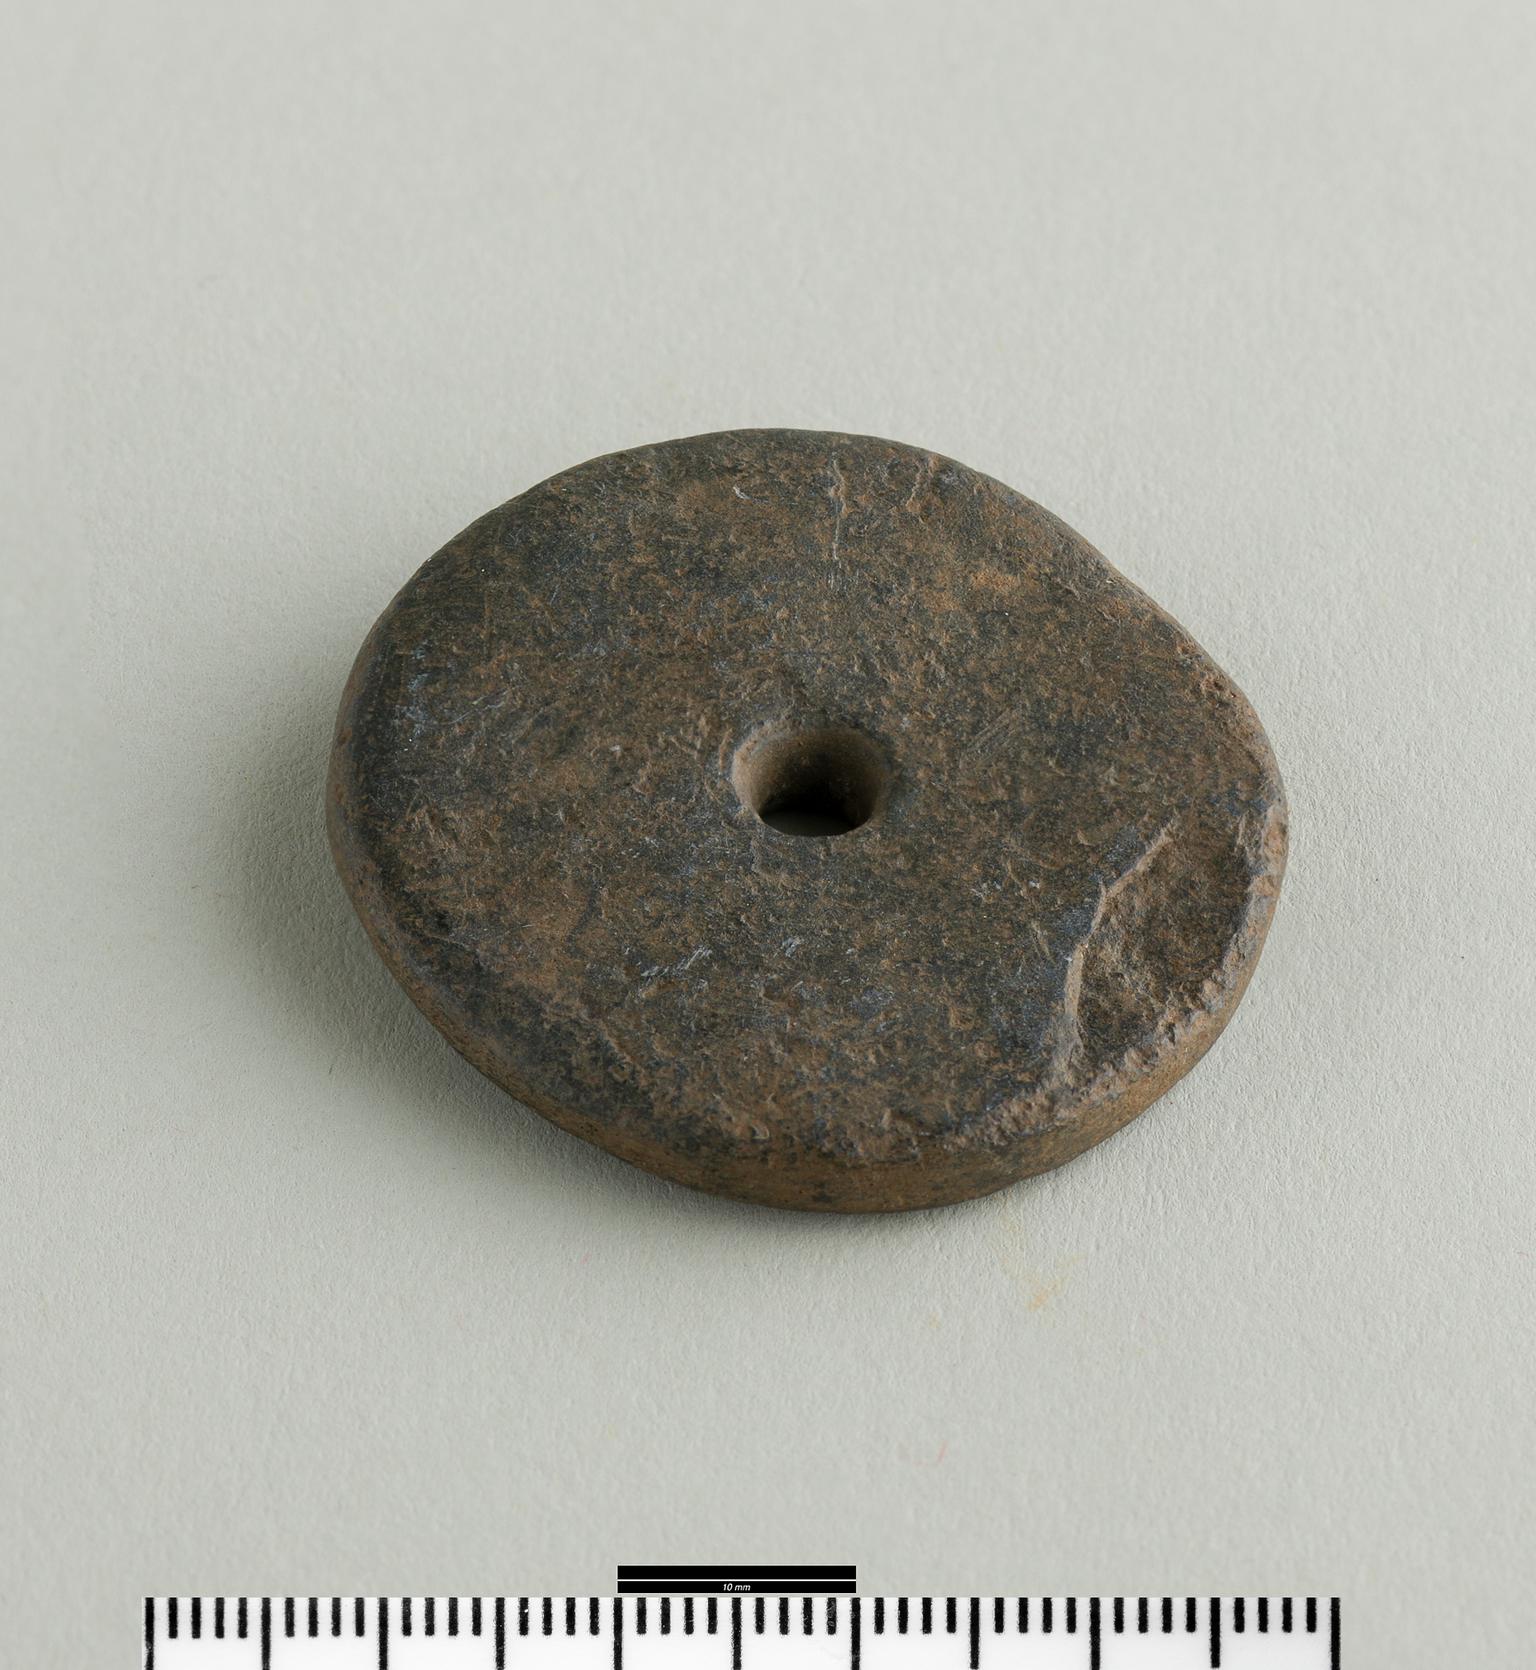 Iron Age / Roman copper alloy chain